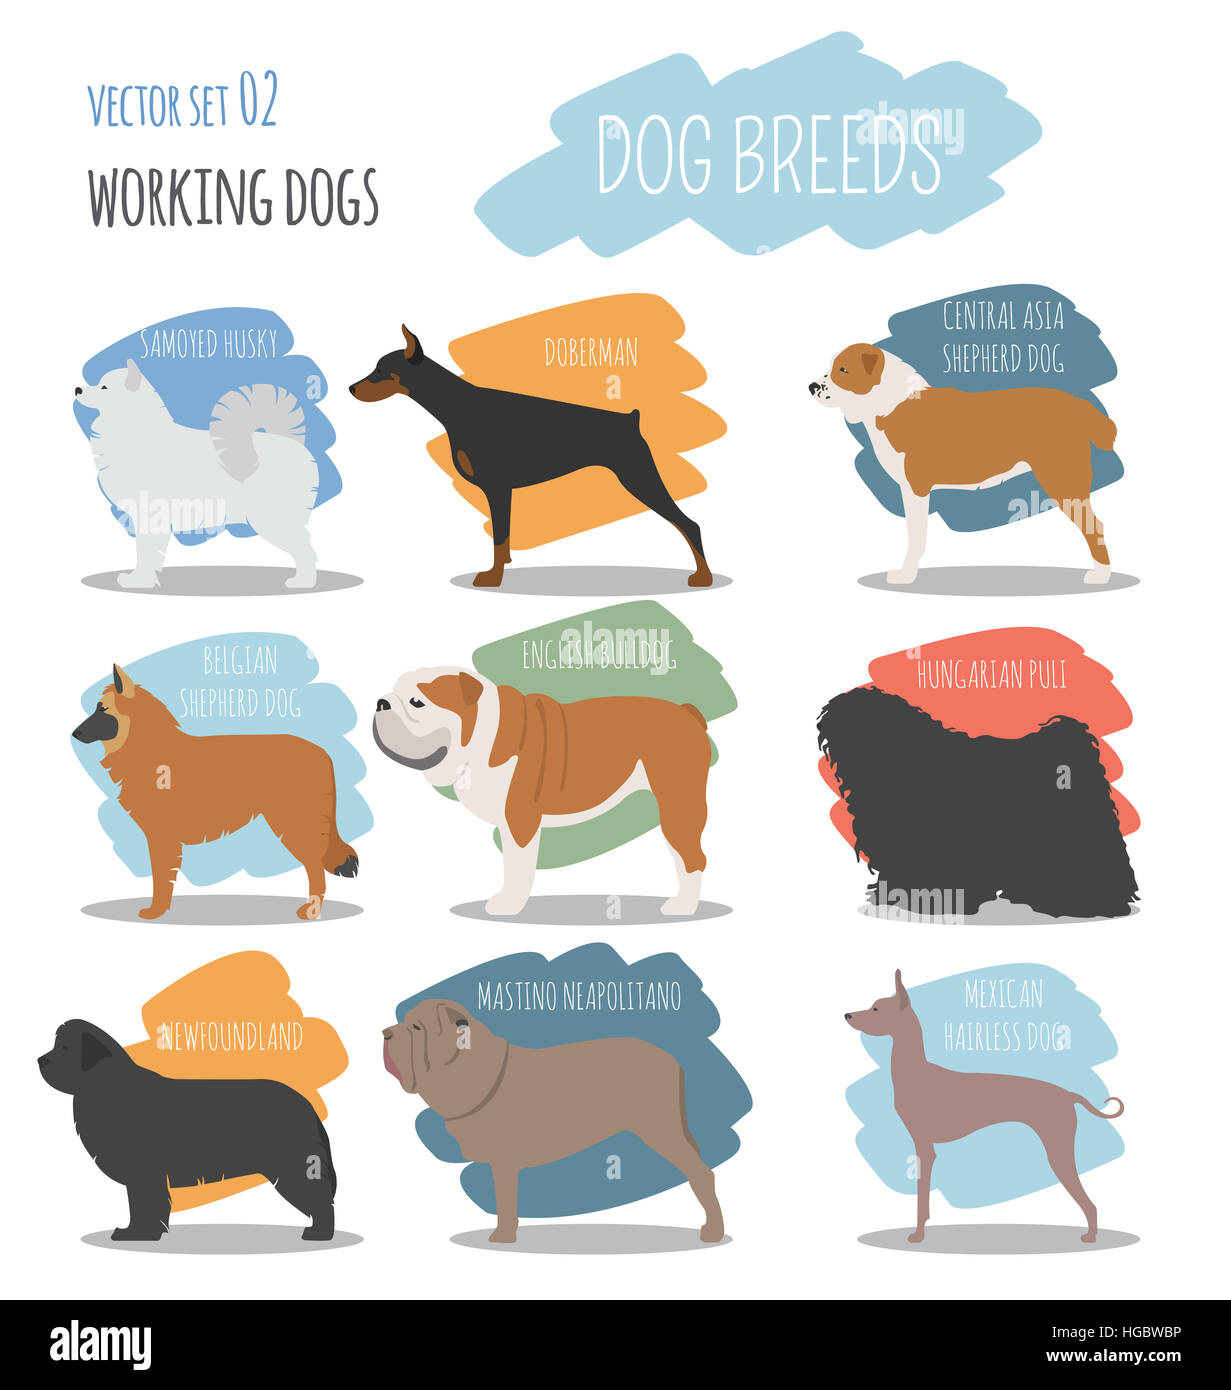 Dog breeds. Working (watching) dog set icon. Flat style. Vector illustration Stock Photo